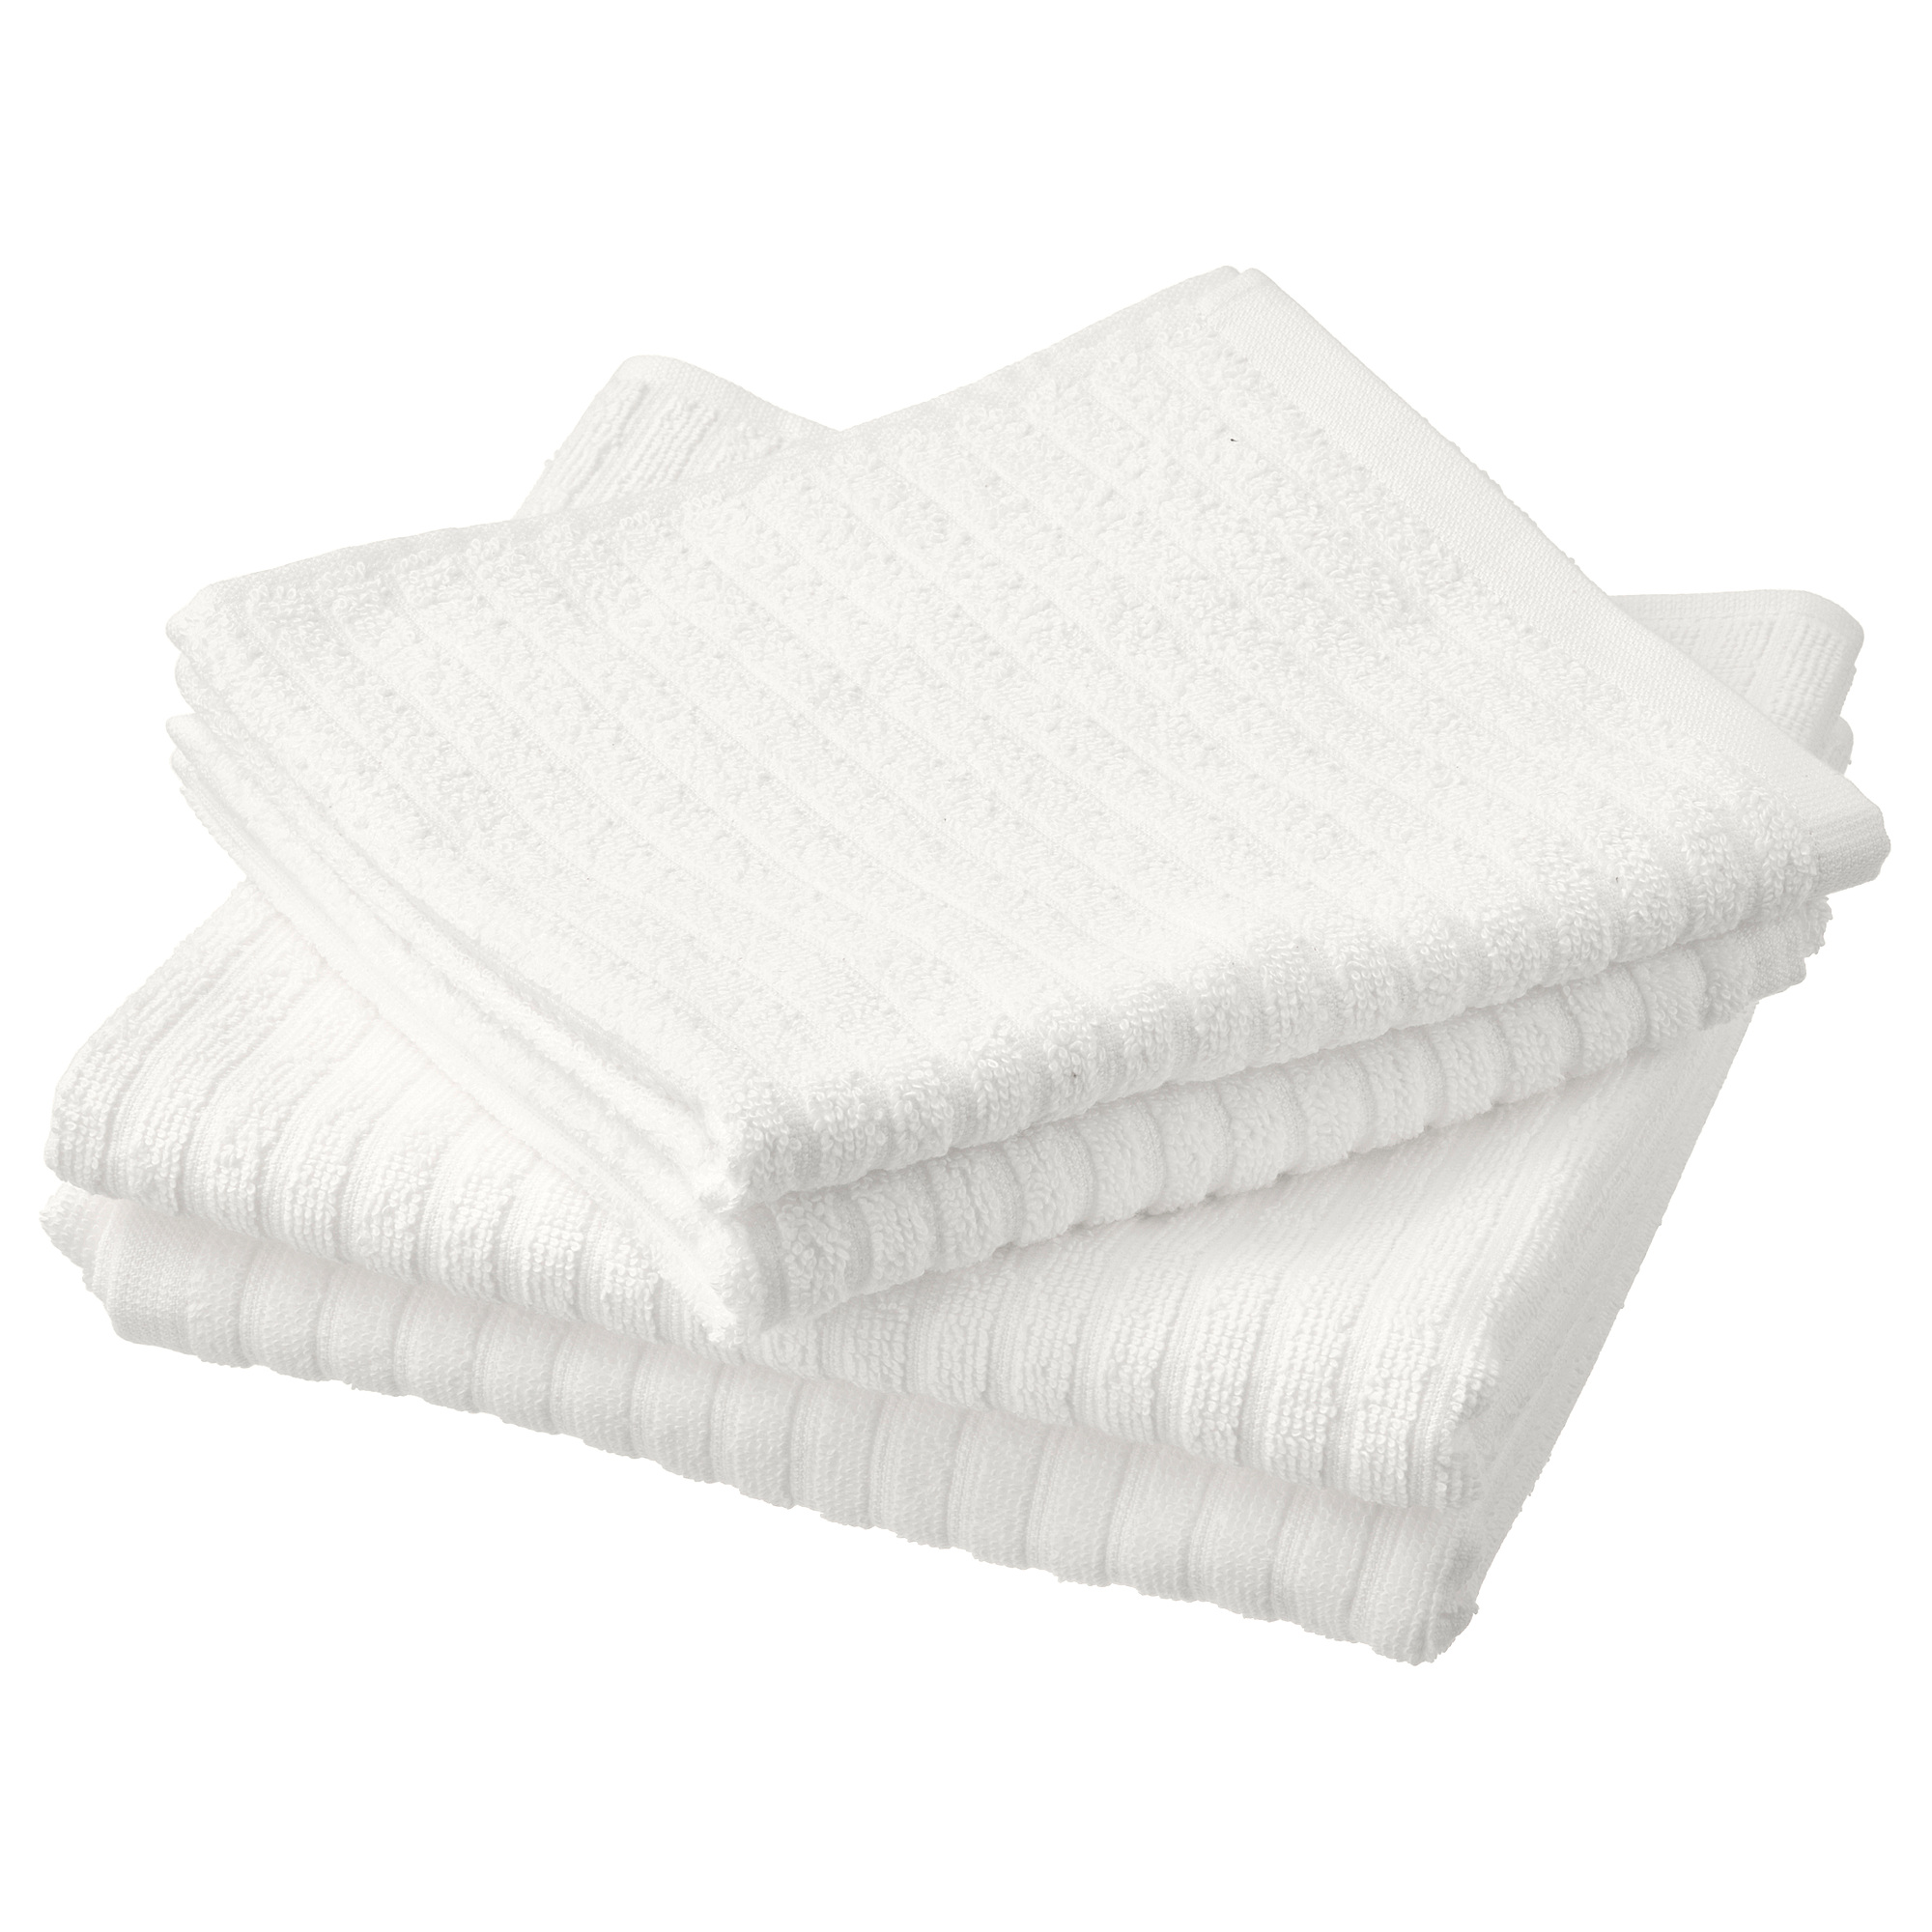 VÅGSJÖN Hand/bath towels set I